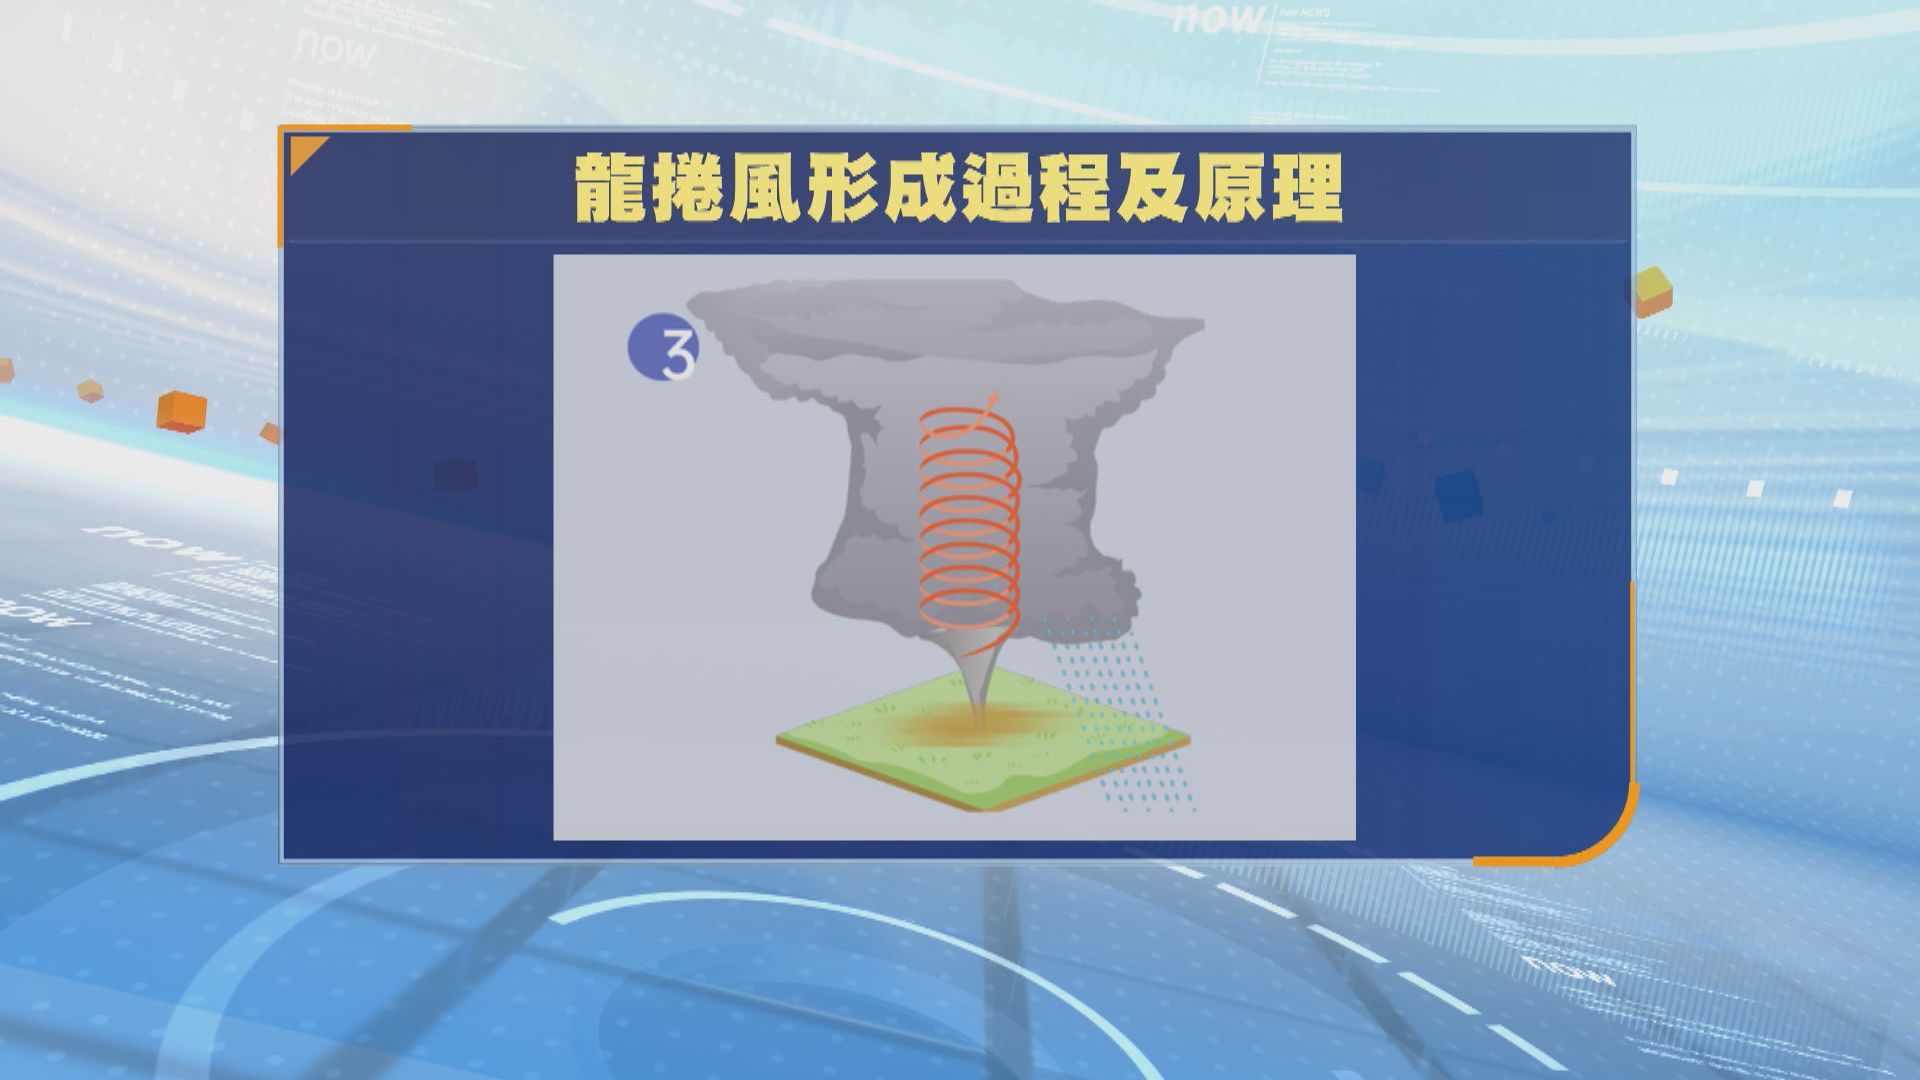 梁榮武稱廣州龍捲風如「超強颱風」 香港建築物可抵禦